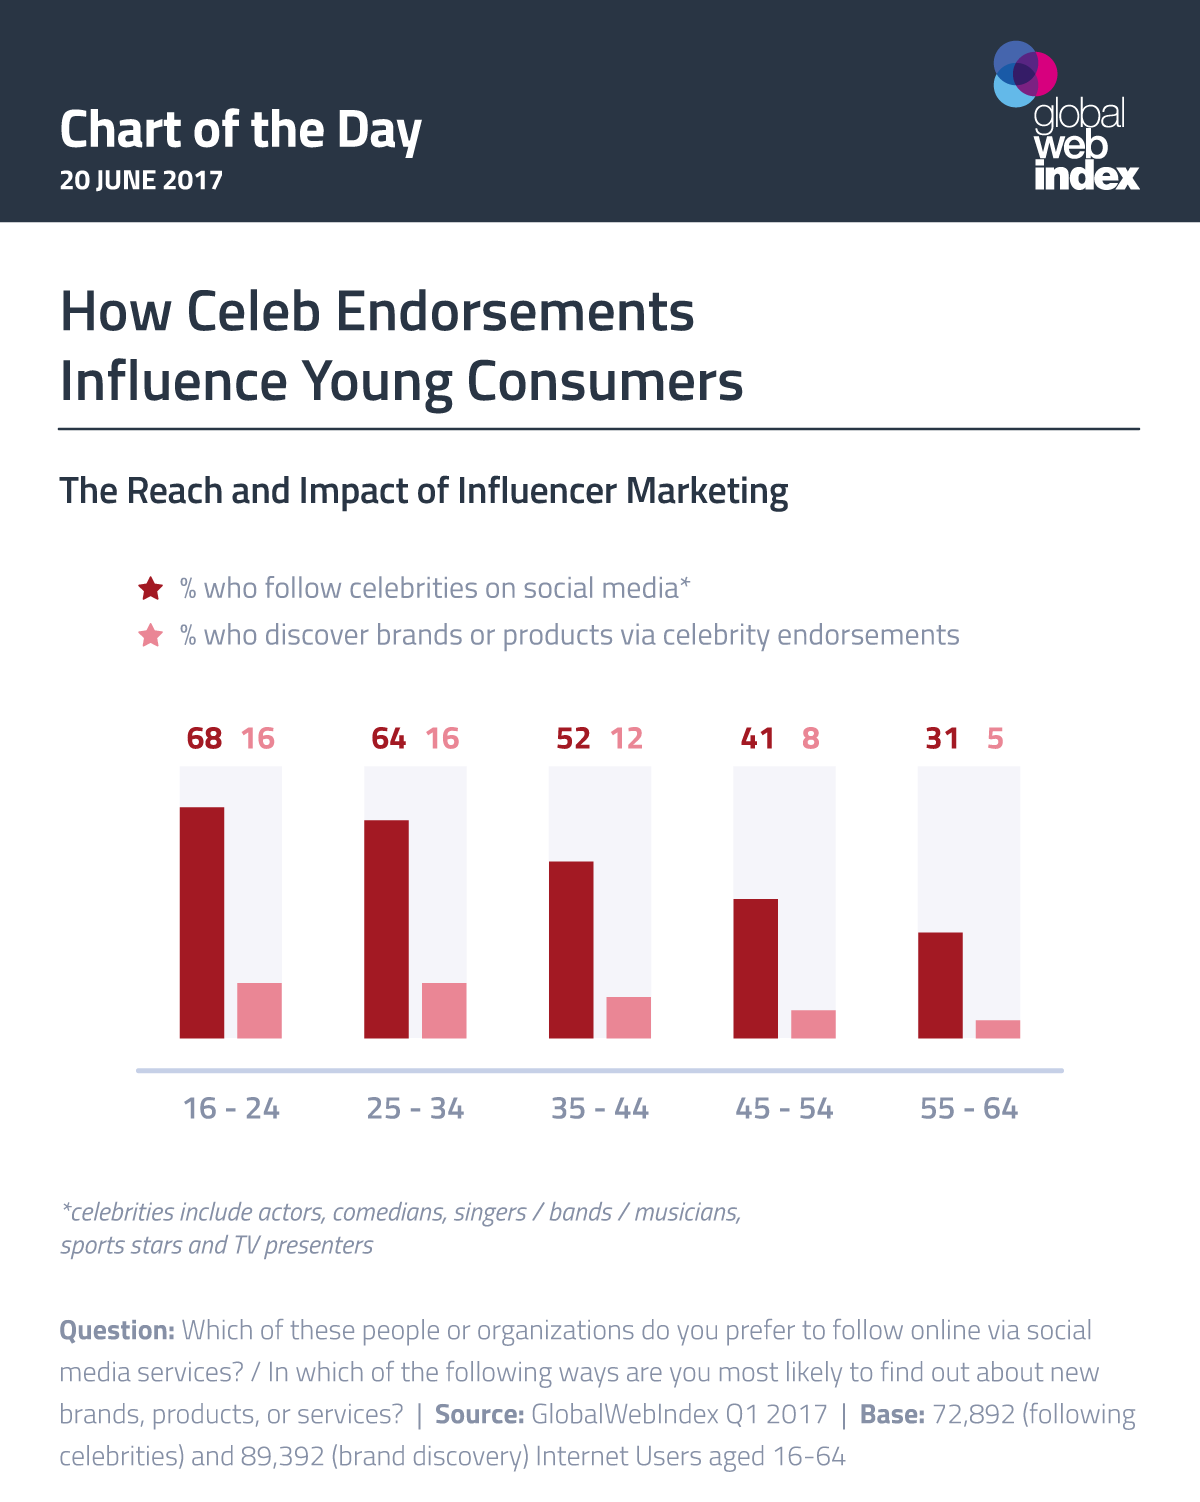 Chart Efektifitas Endorsement Selebriti Pada Konsumen Muda. Sumber: Global Web Index 2017